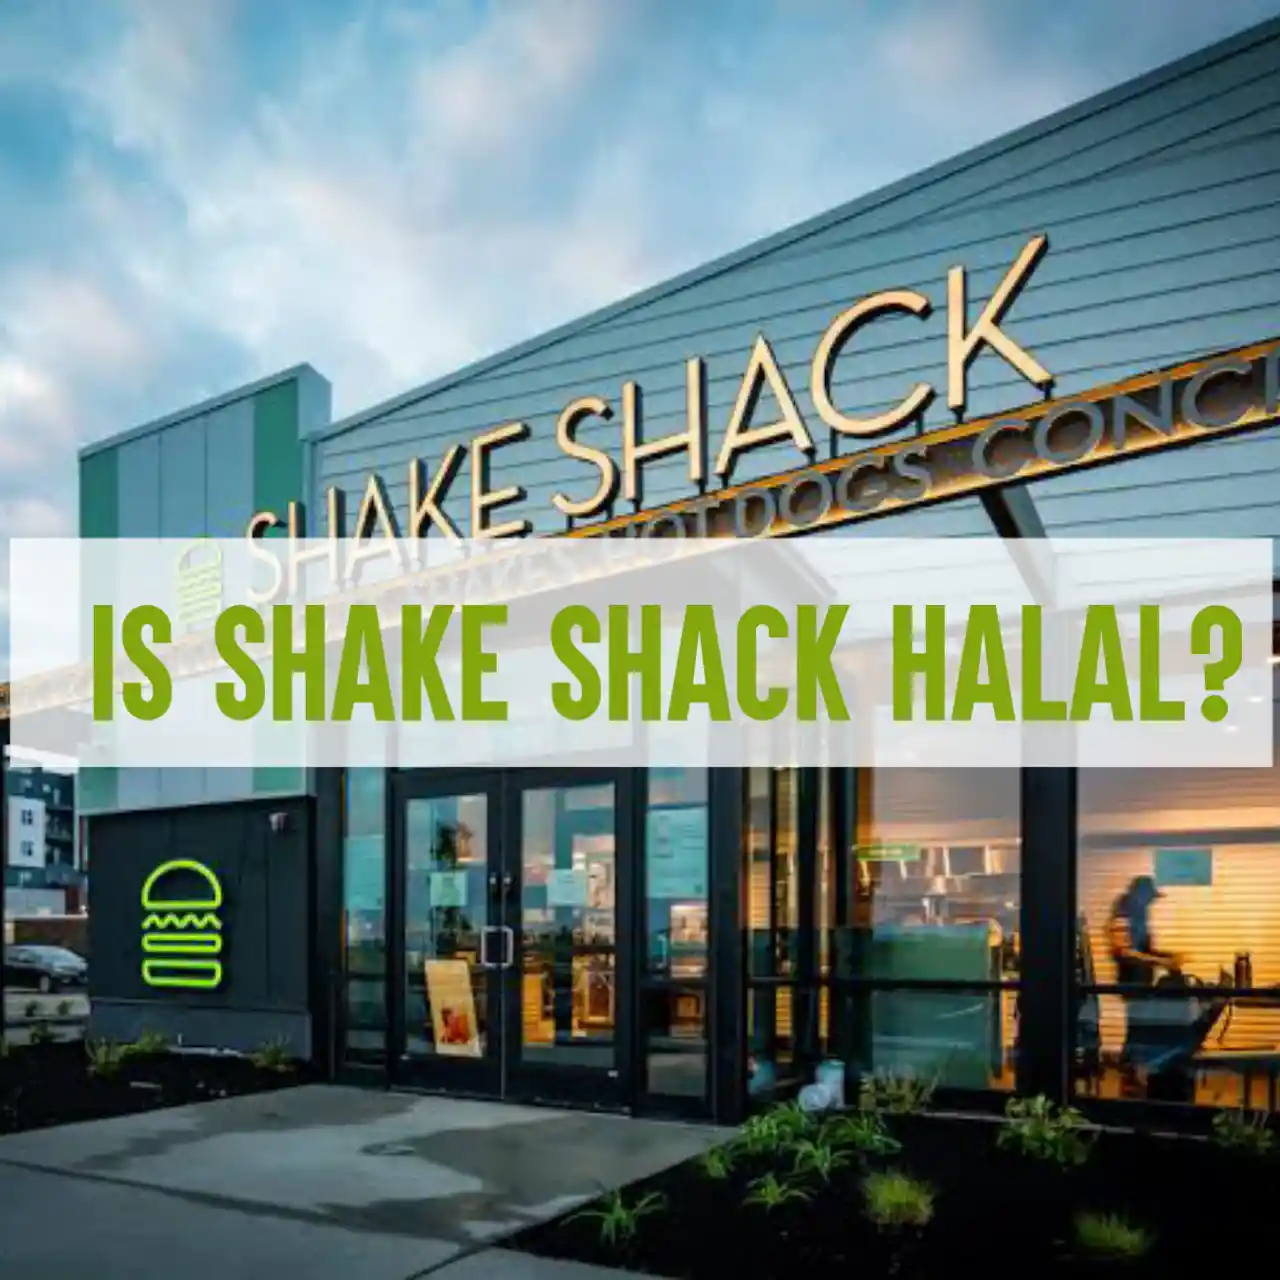 Is Shake Shack halal